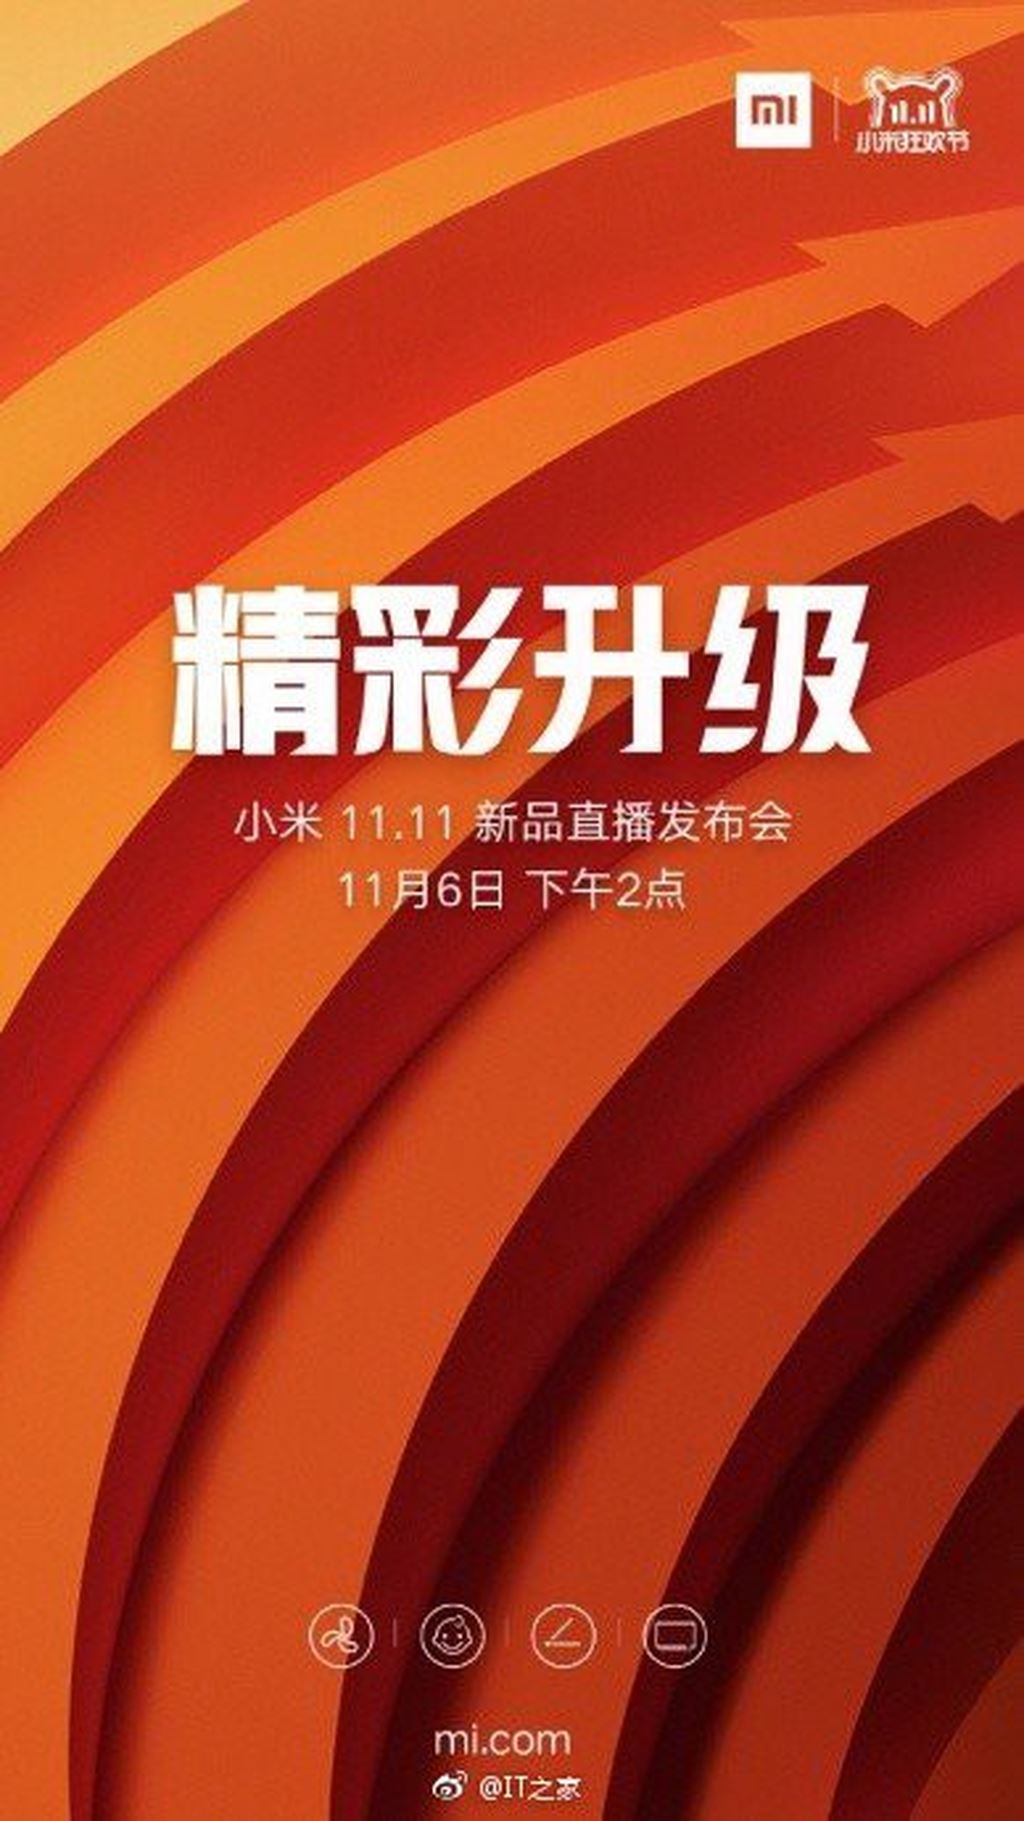 Xiaomi Redmi Note 6 được ra mắt vào ngày 6/11? ảnh 2